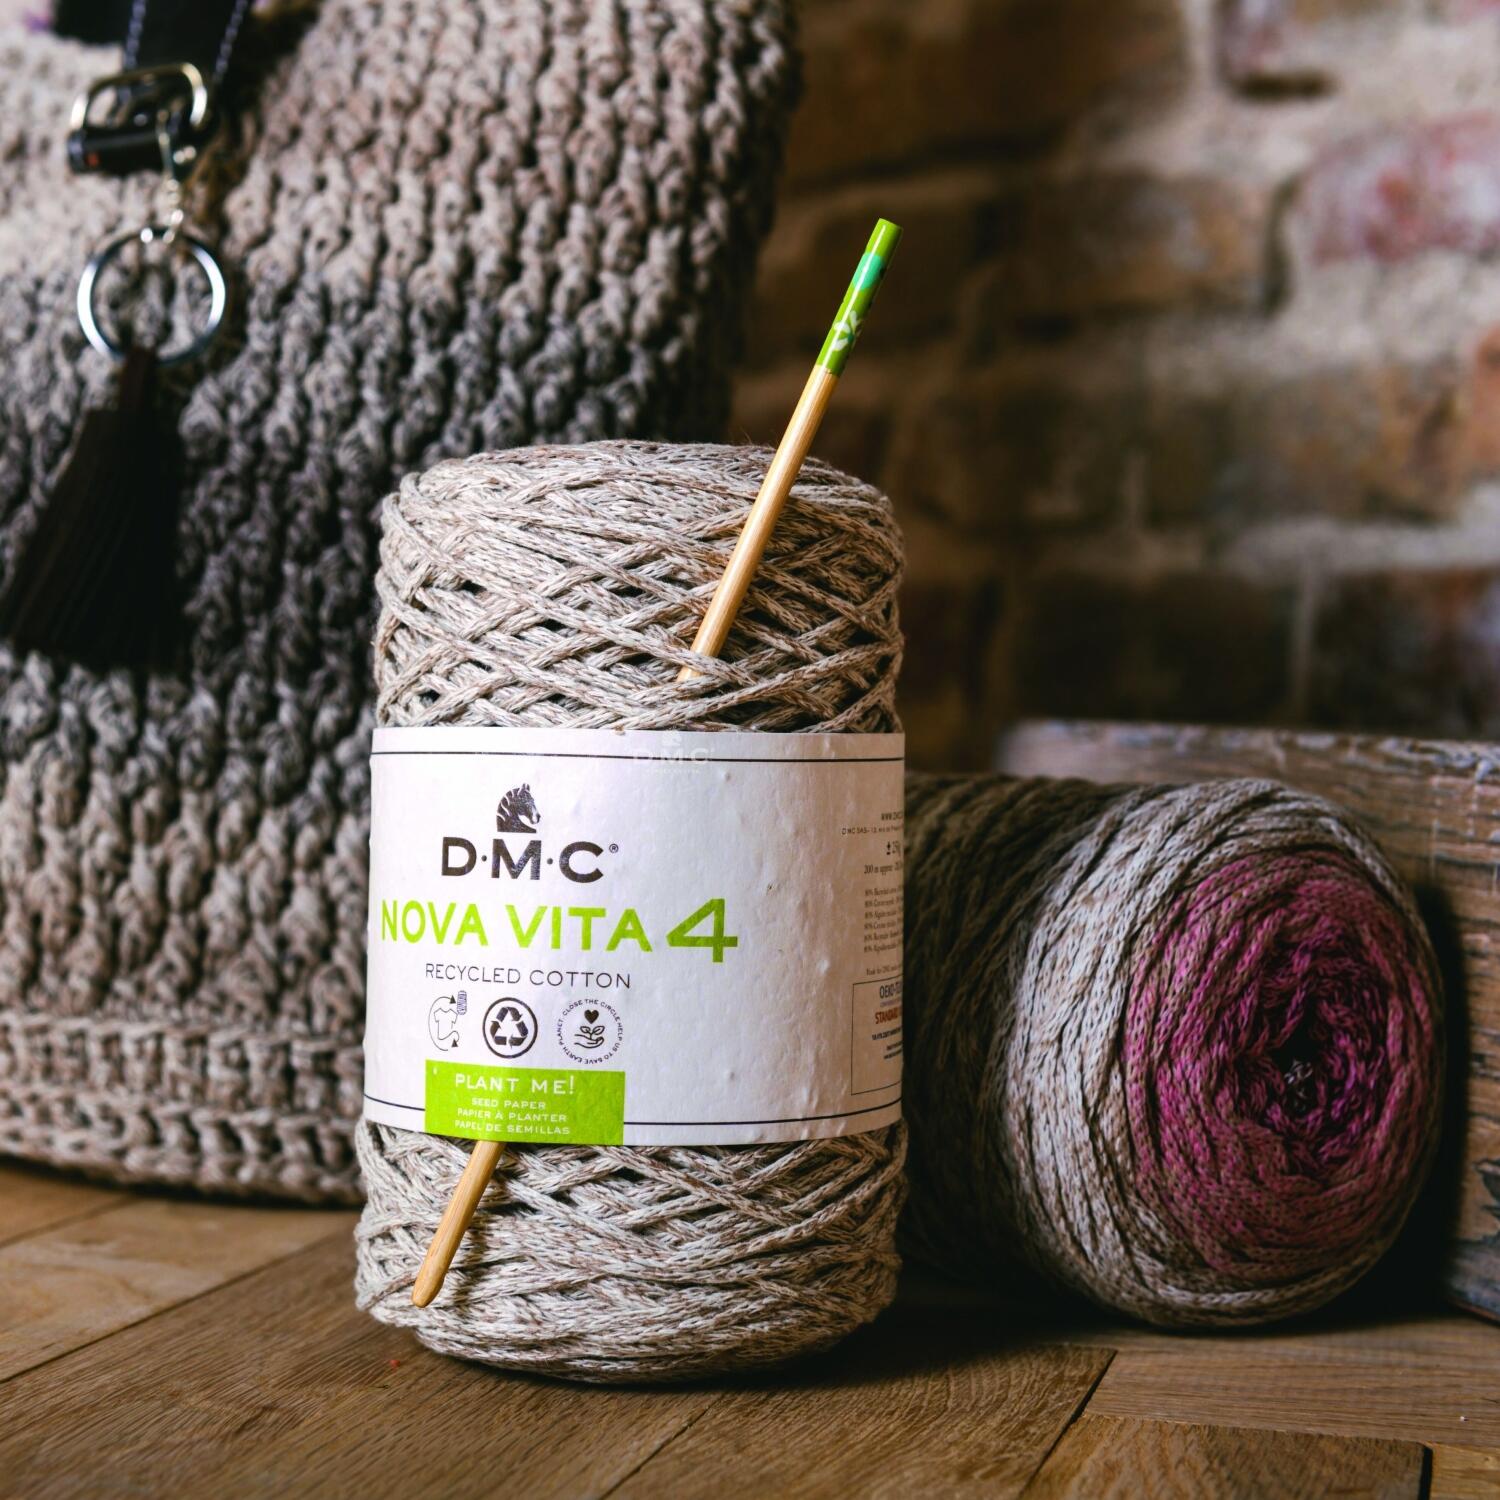 DMC Nova Vita 4 Multicolor 250g Makrameegarn aus recycelter Baumwolle